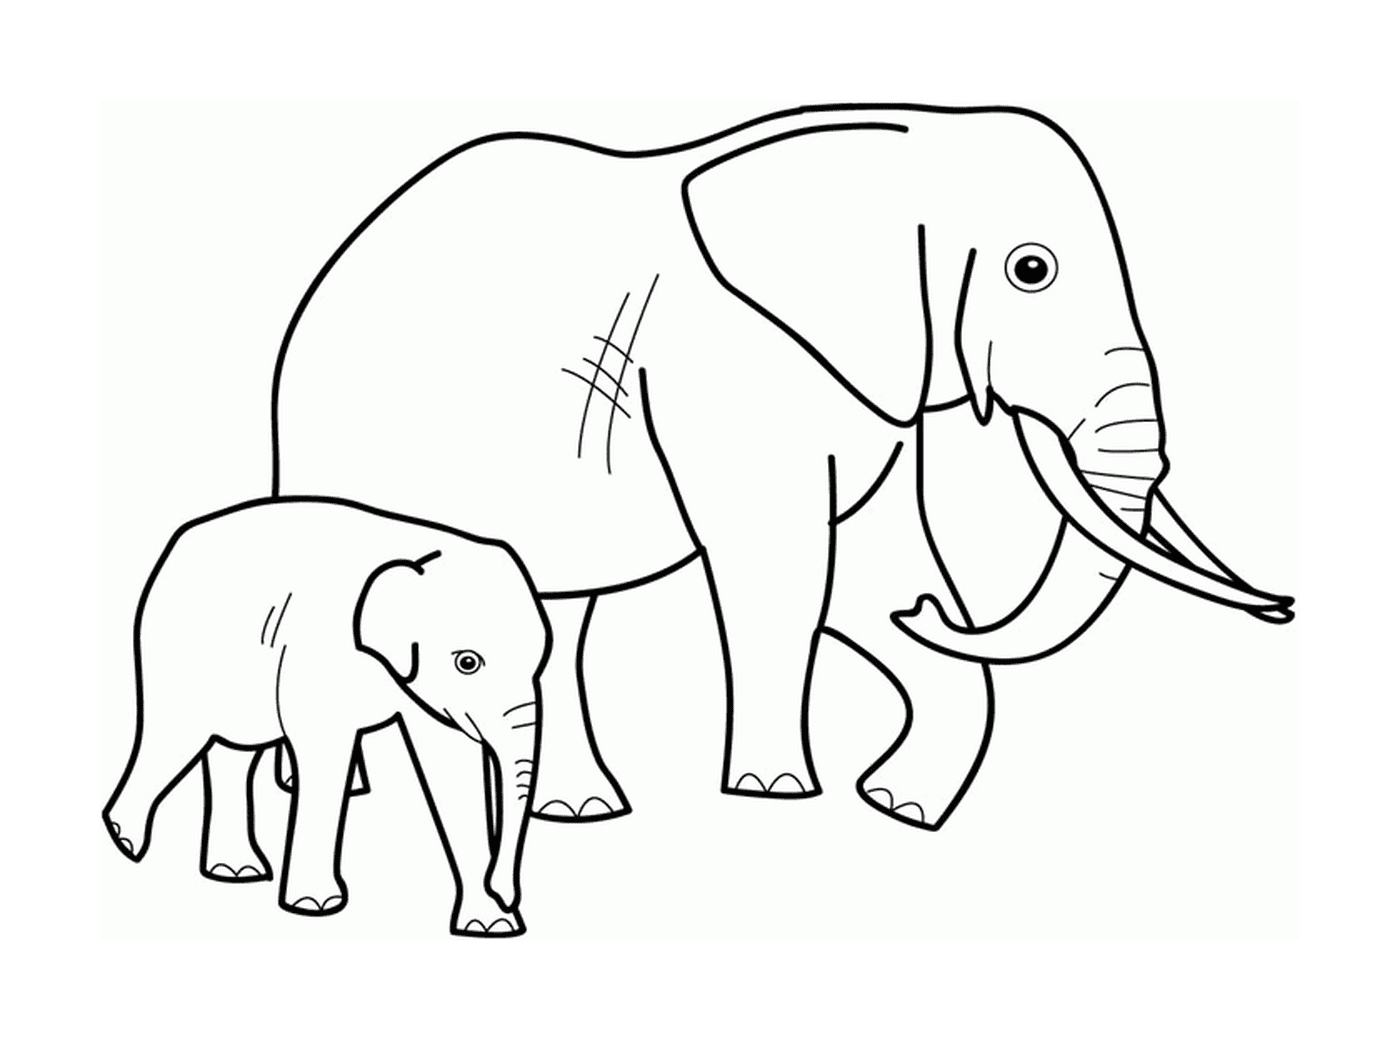  एक वयस्क हाथी और हाथी एक दूसरे के बगल में 